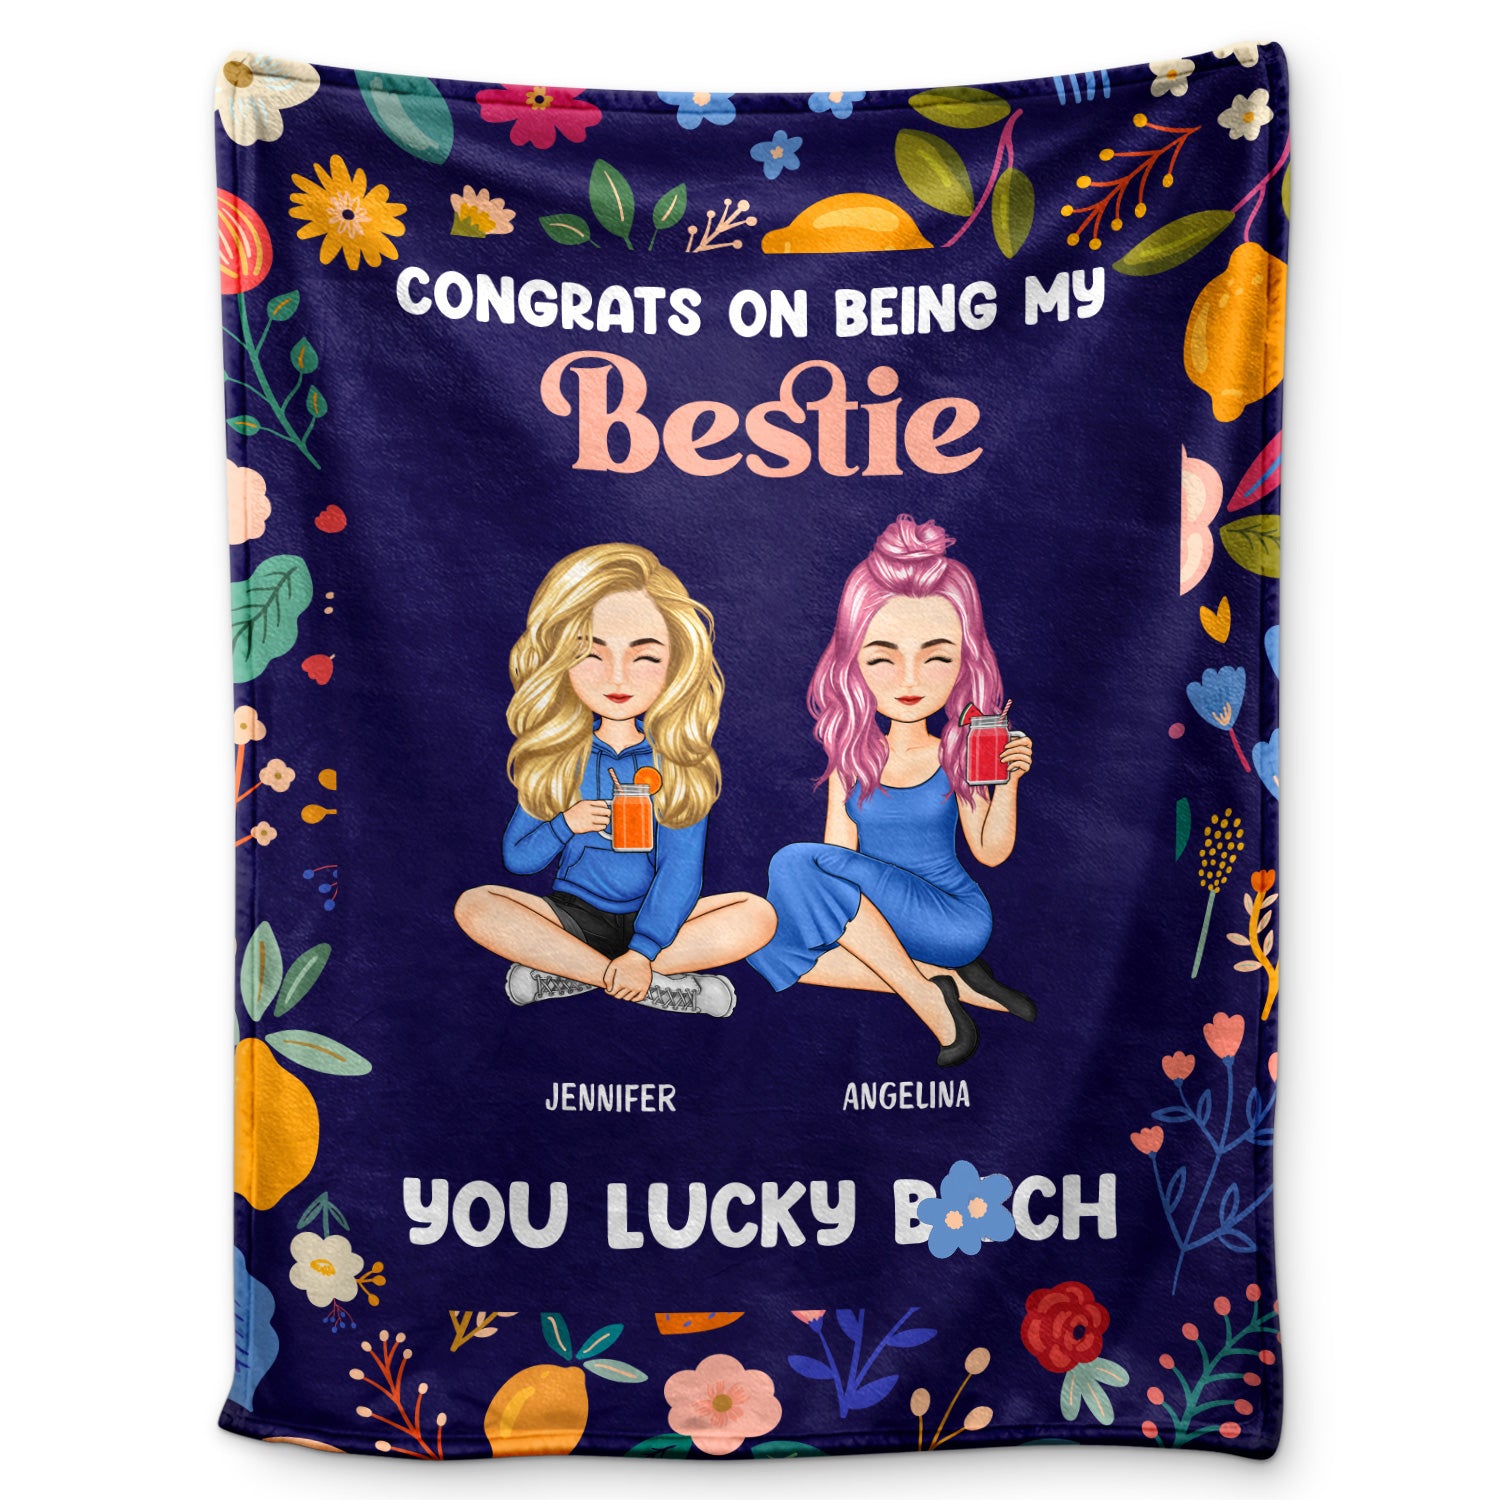 Bestie Cartoon Congrats On Being My Bestie - Gift For Bestie - Personalized Fleece Blanket